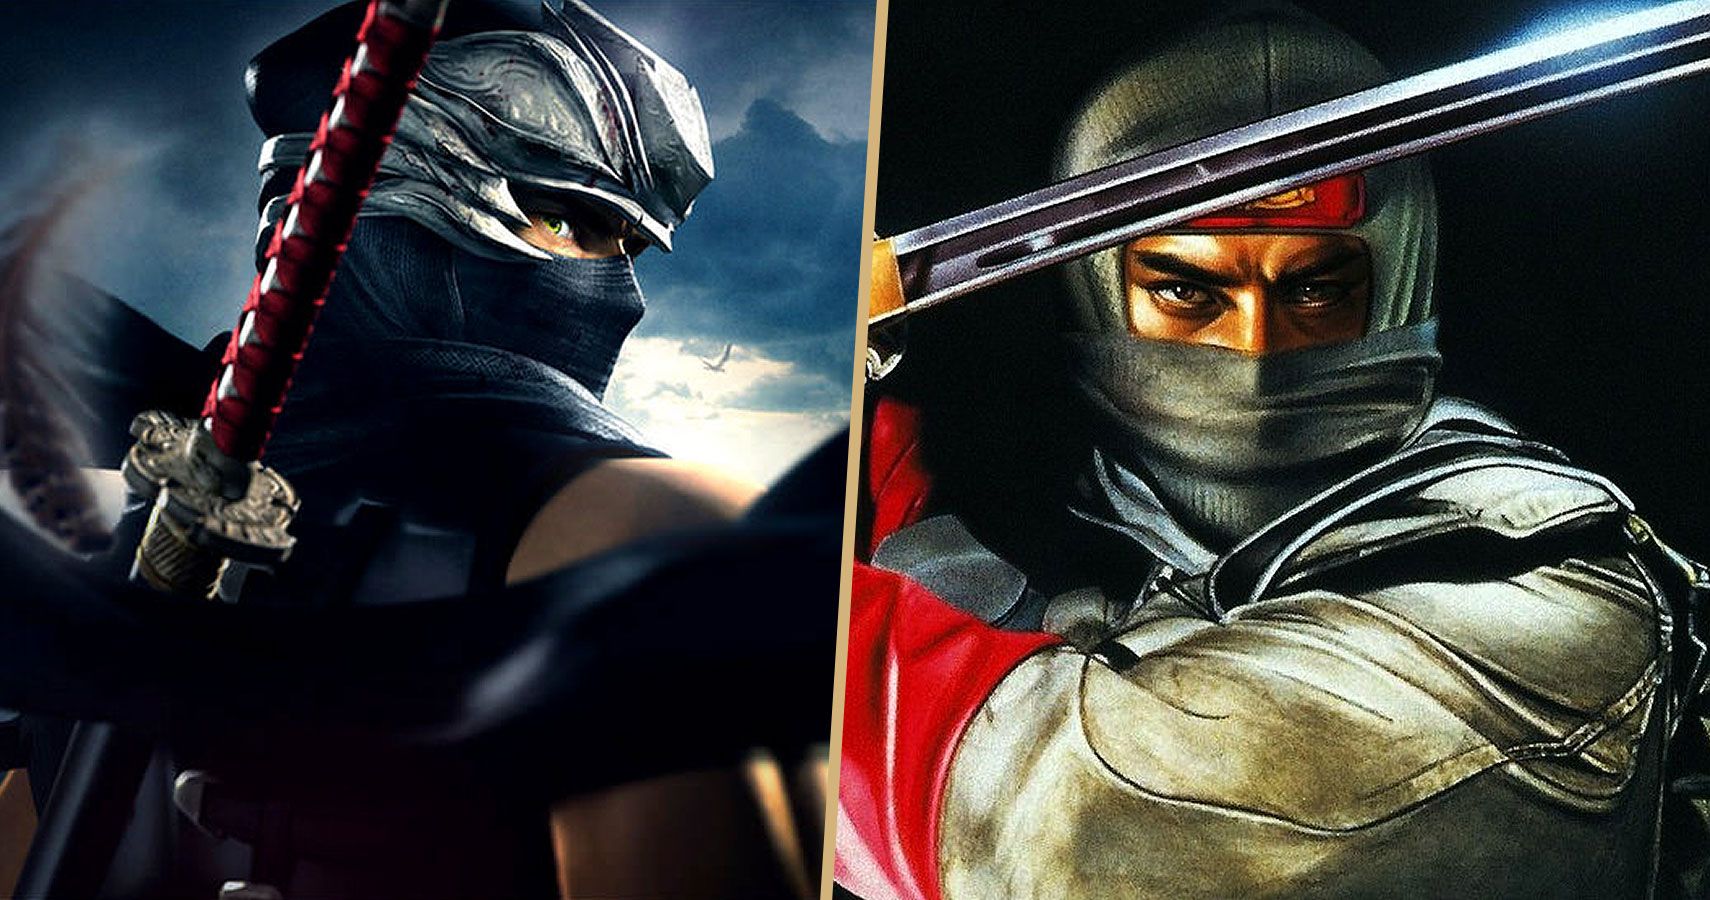 Ninja Fight! Ryu Hayabusa (Ninja Gaiden) vs. Joe Musashi (Shinobi)